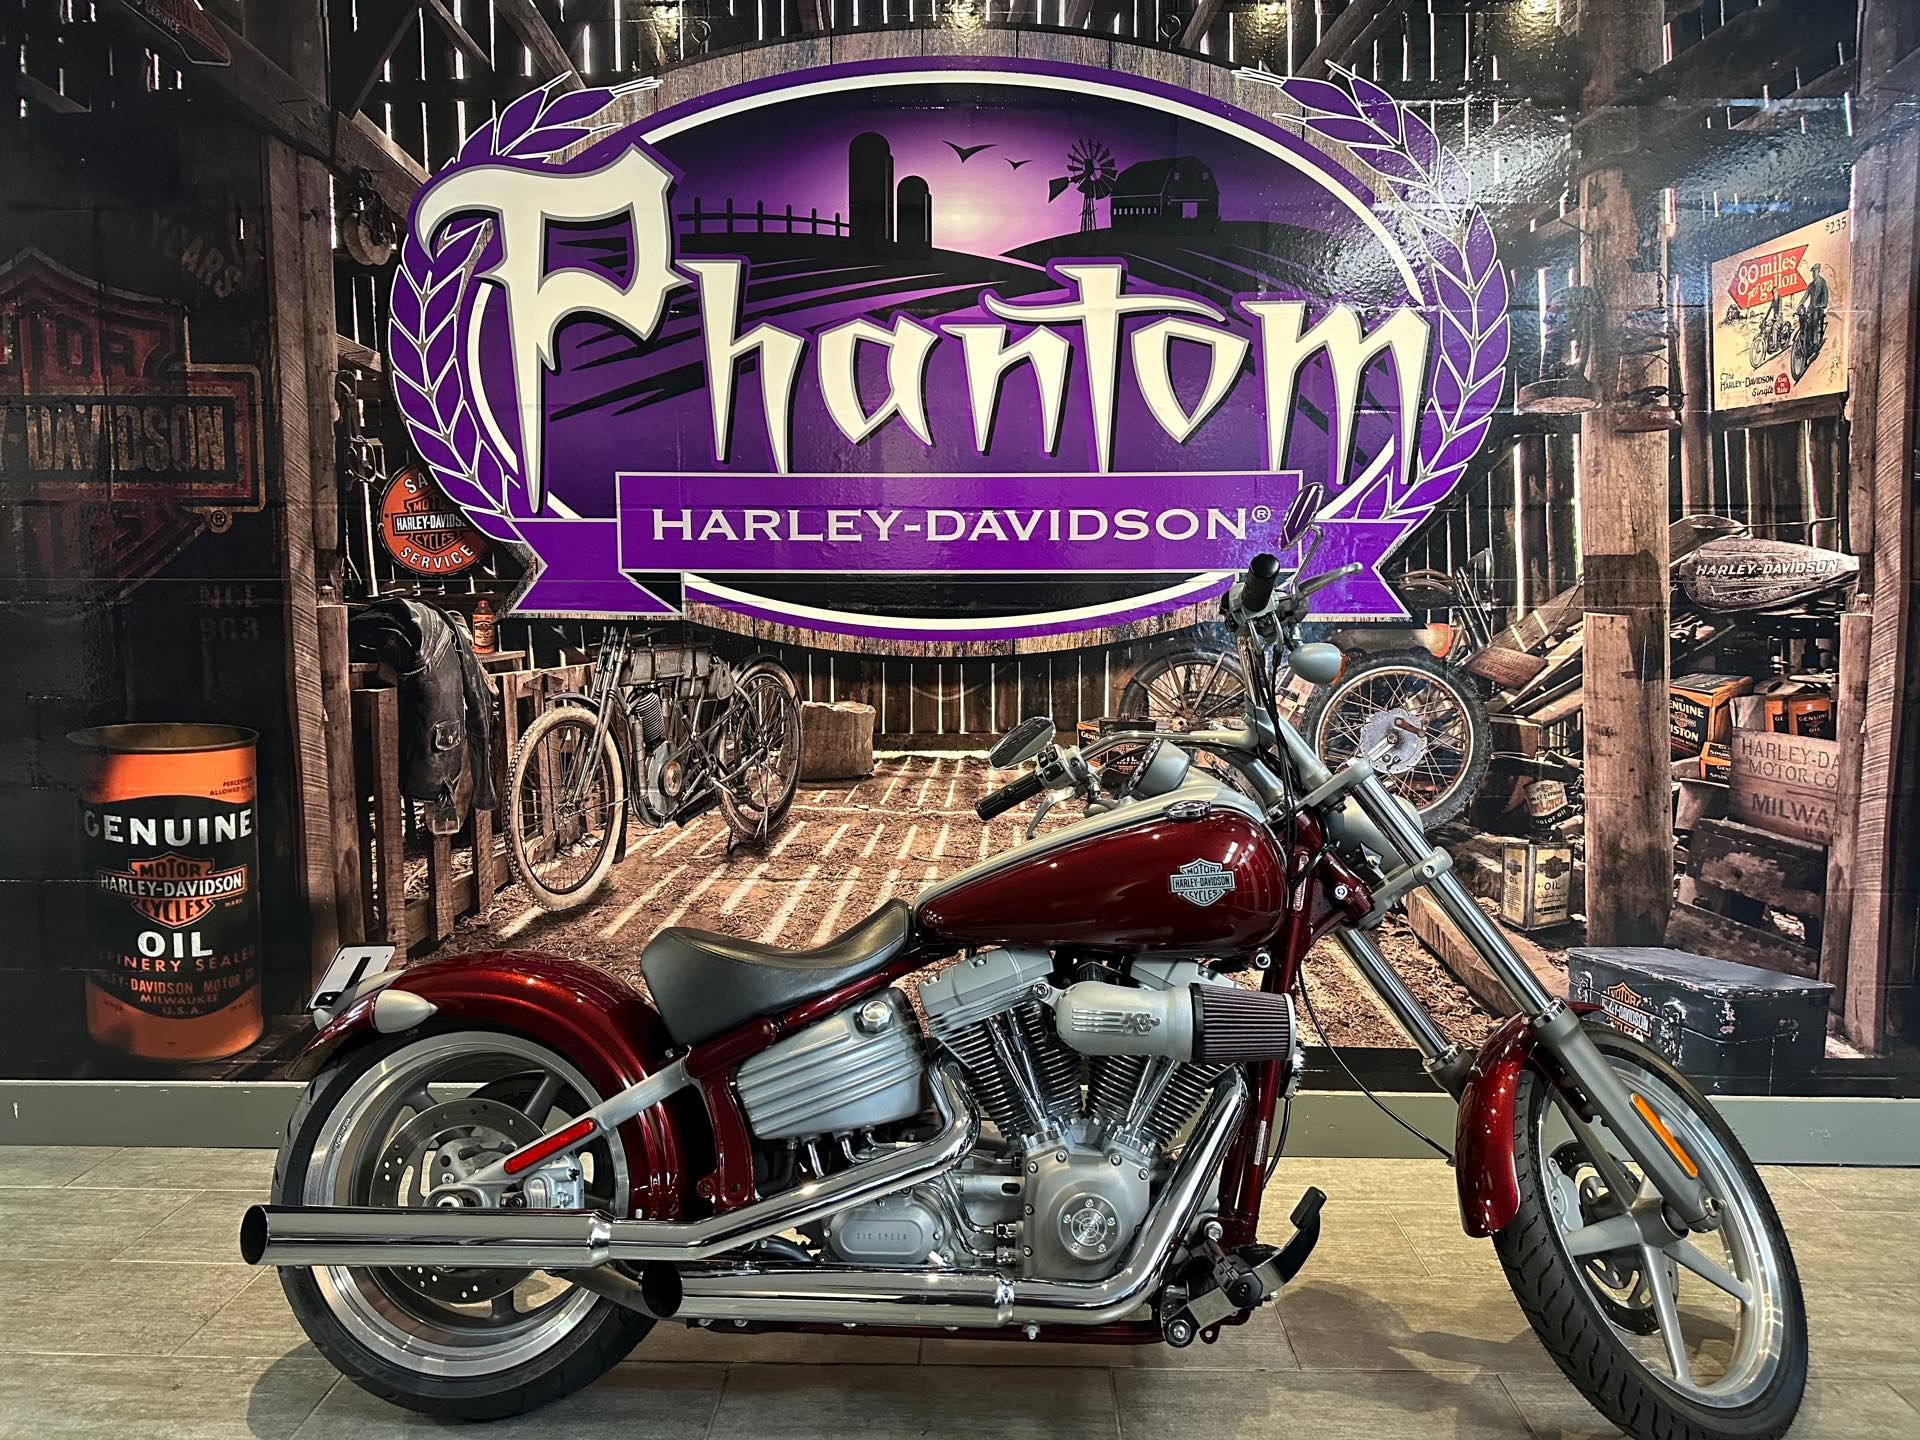 2008 Harley-Davidson Softail Rocker at Phantom Harley-Davidson